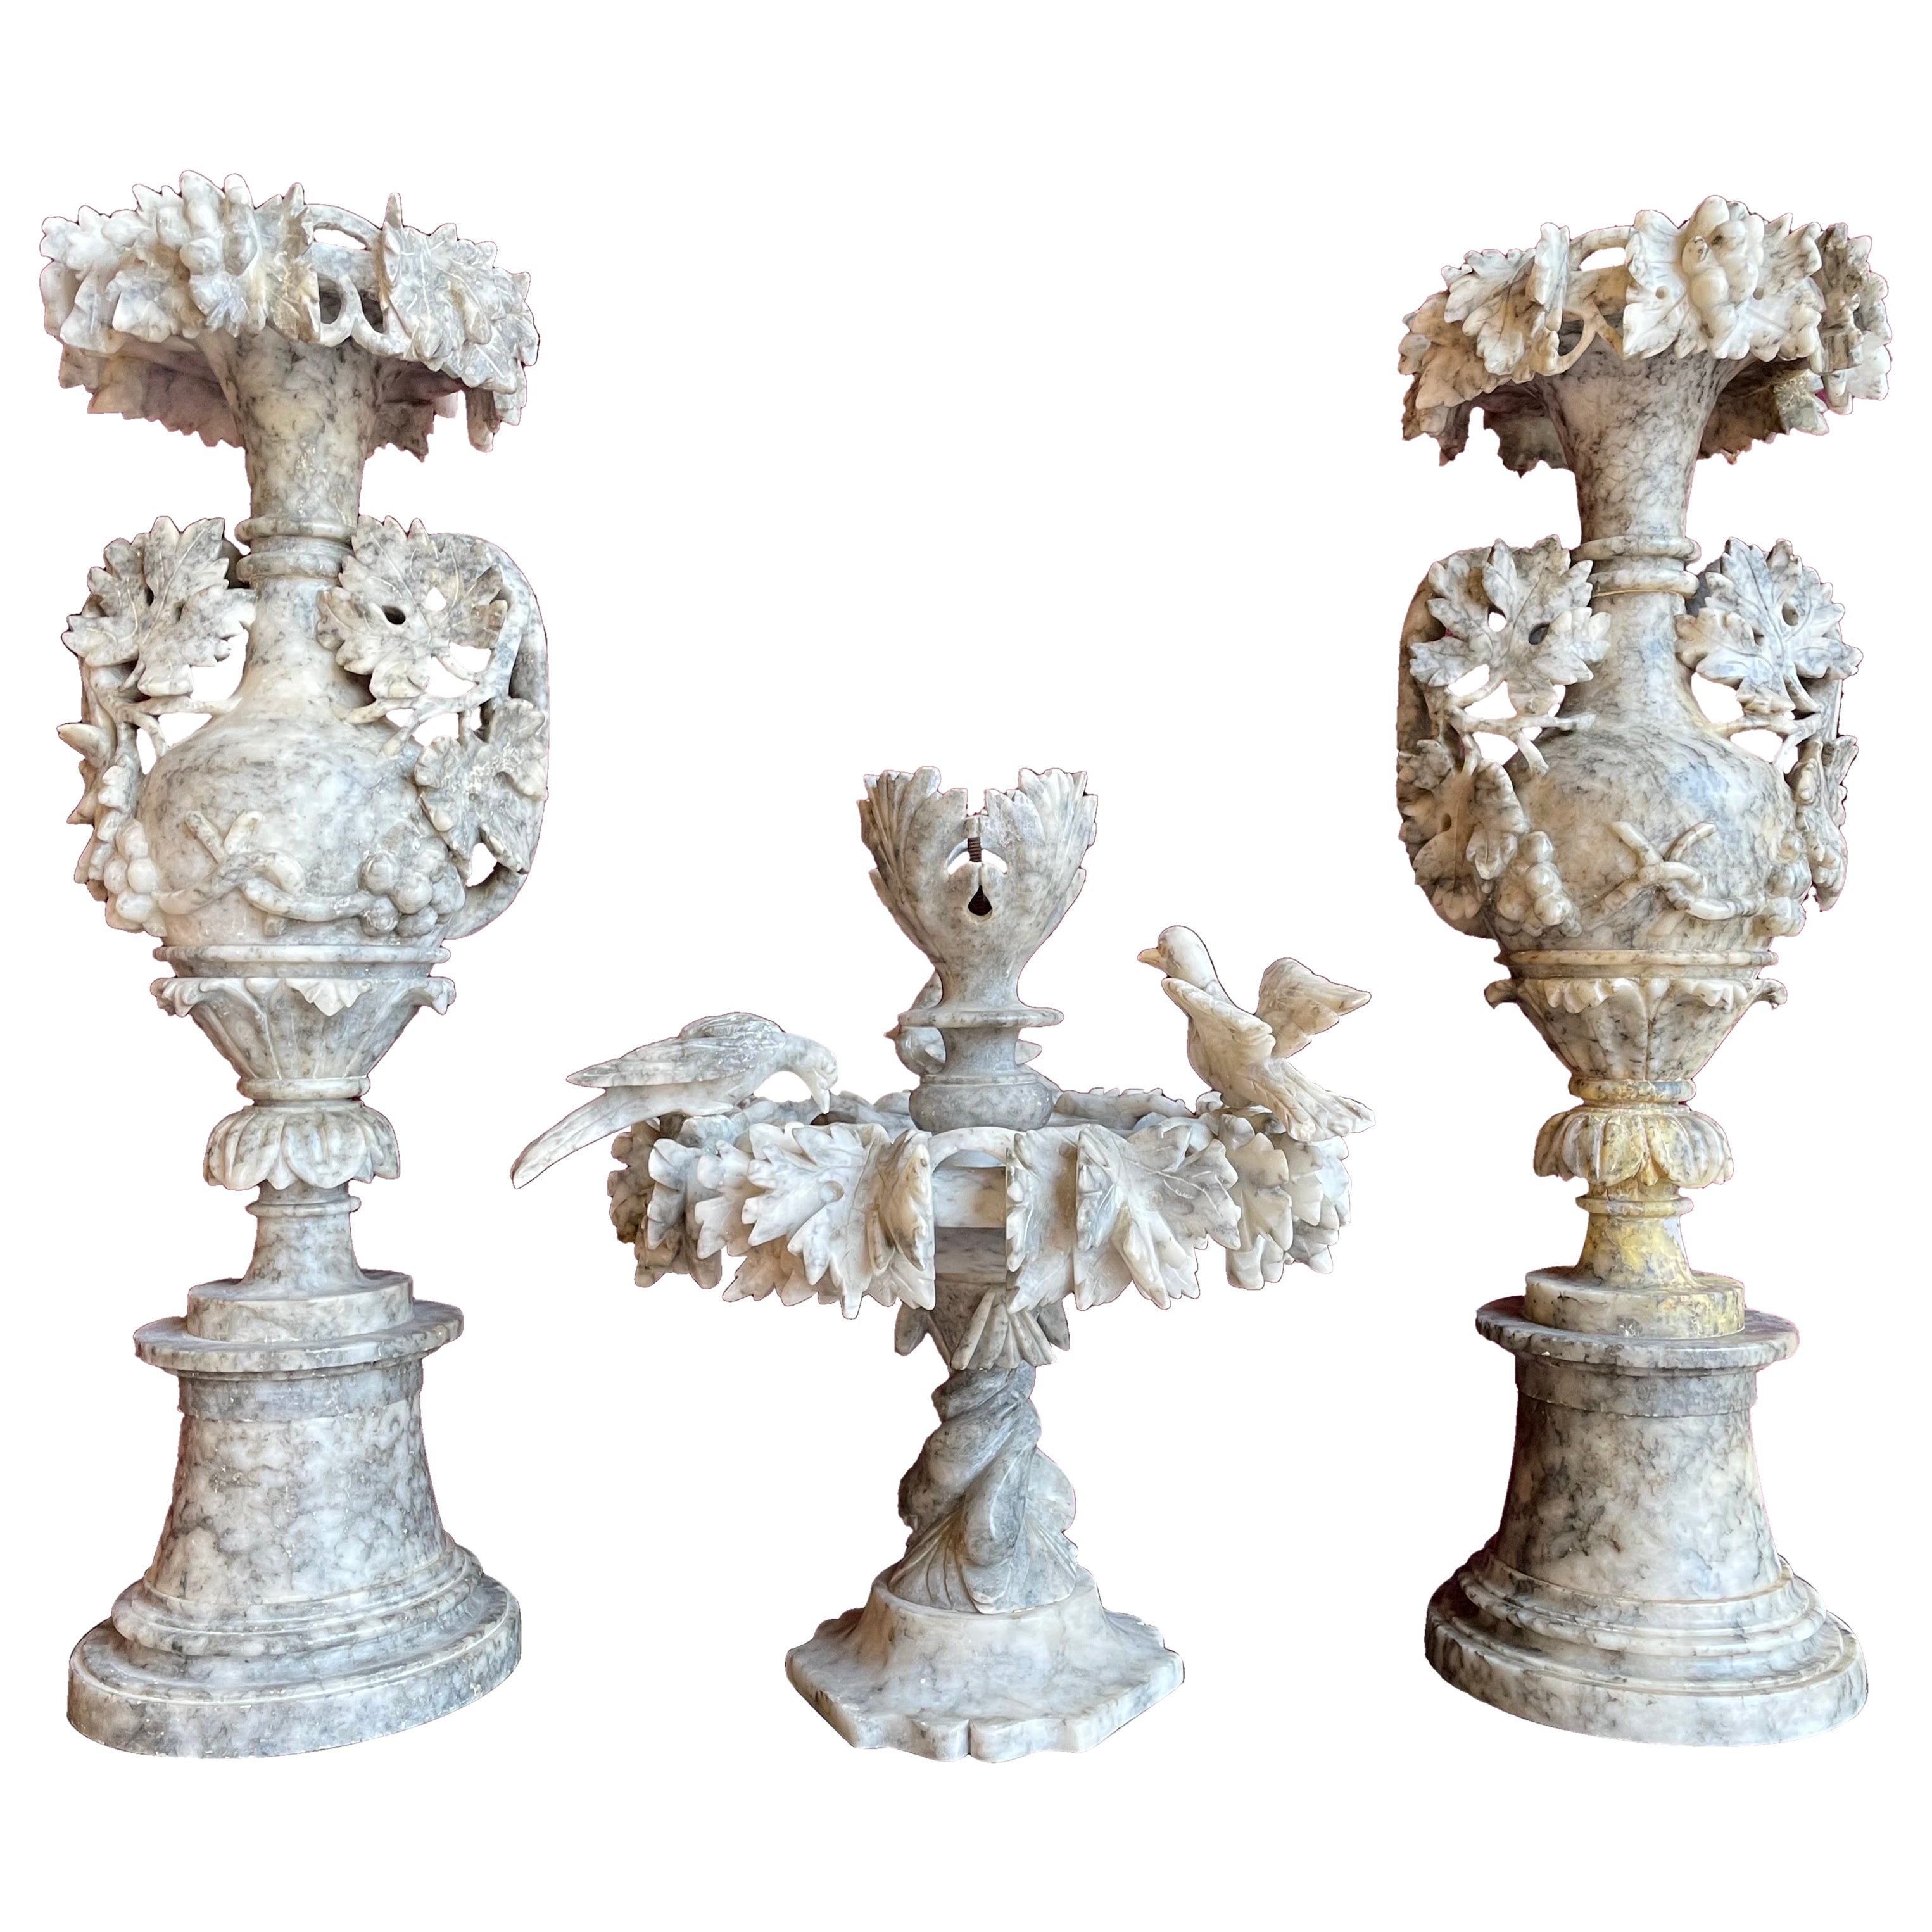 Antique & Impressive, Beautifully Hand Carved Alabaster Set of Ornamental Vases